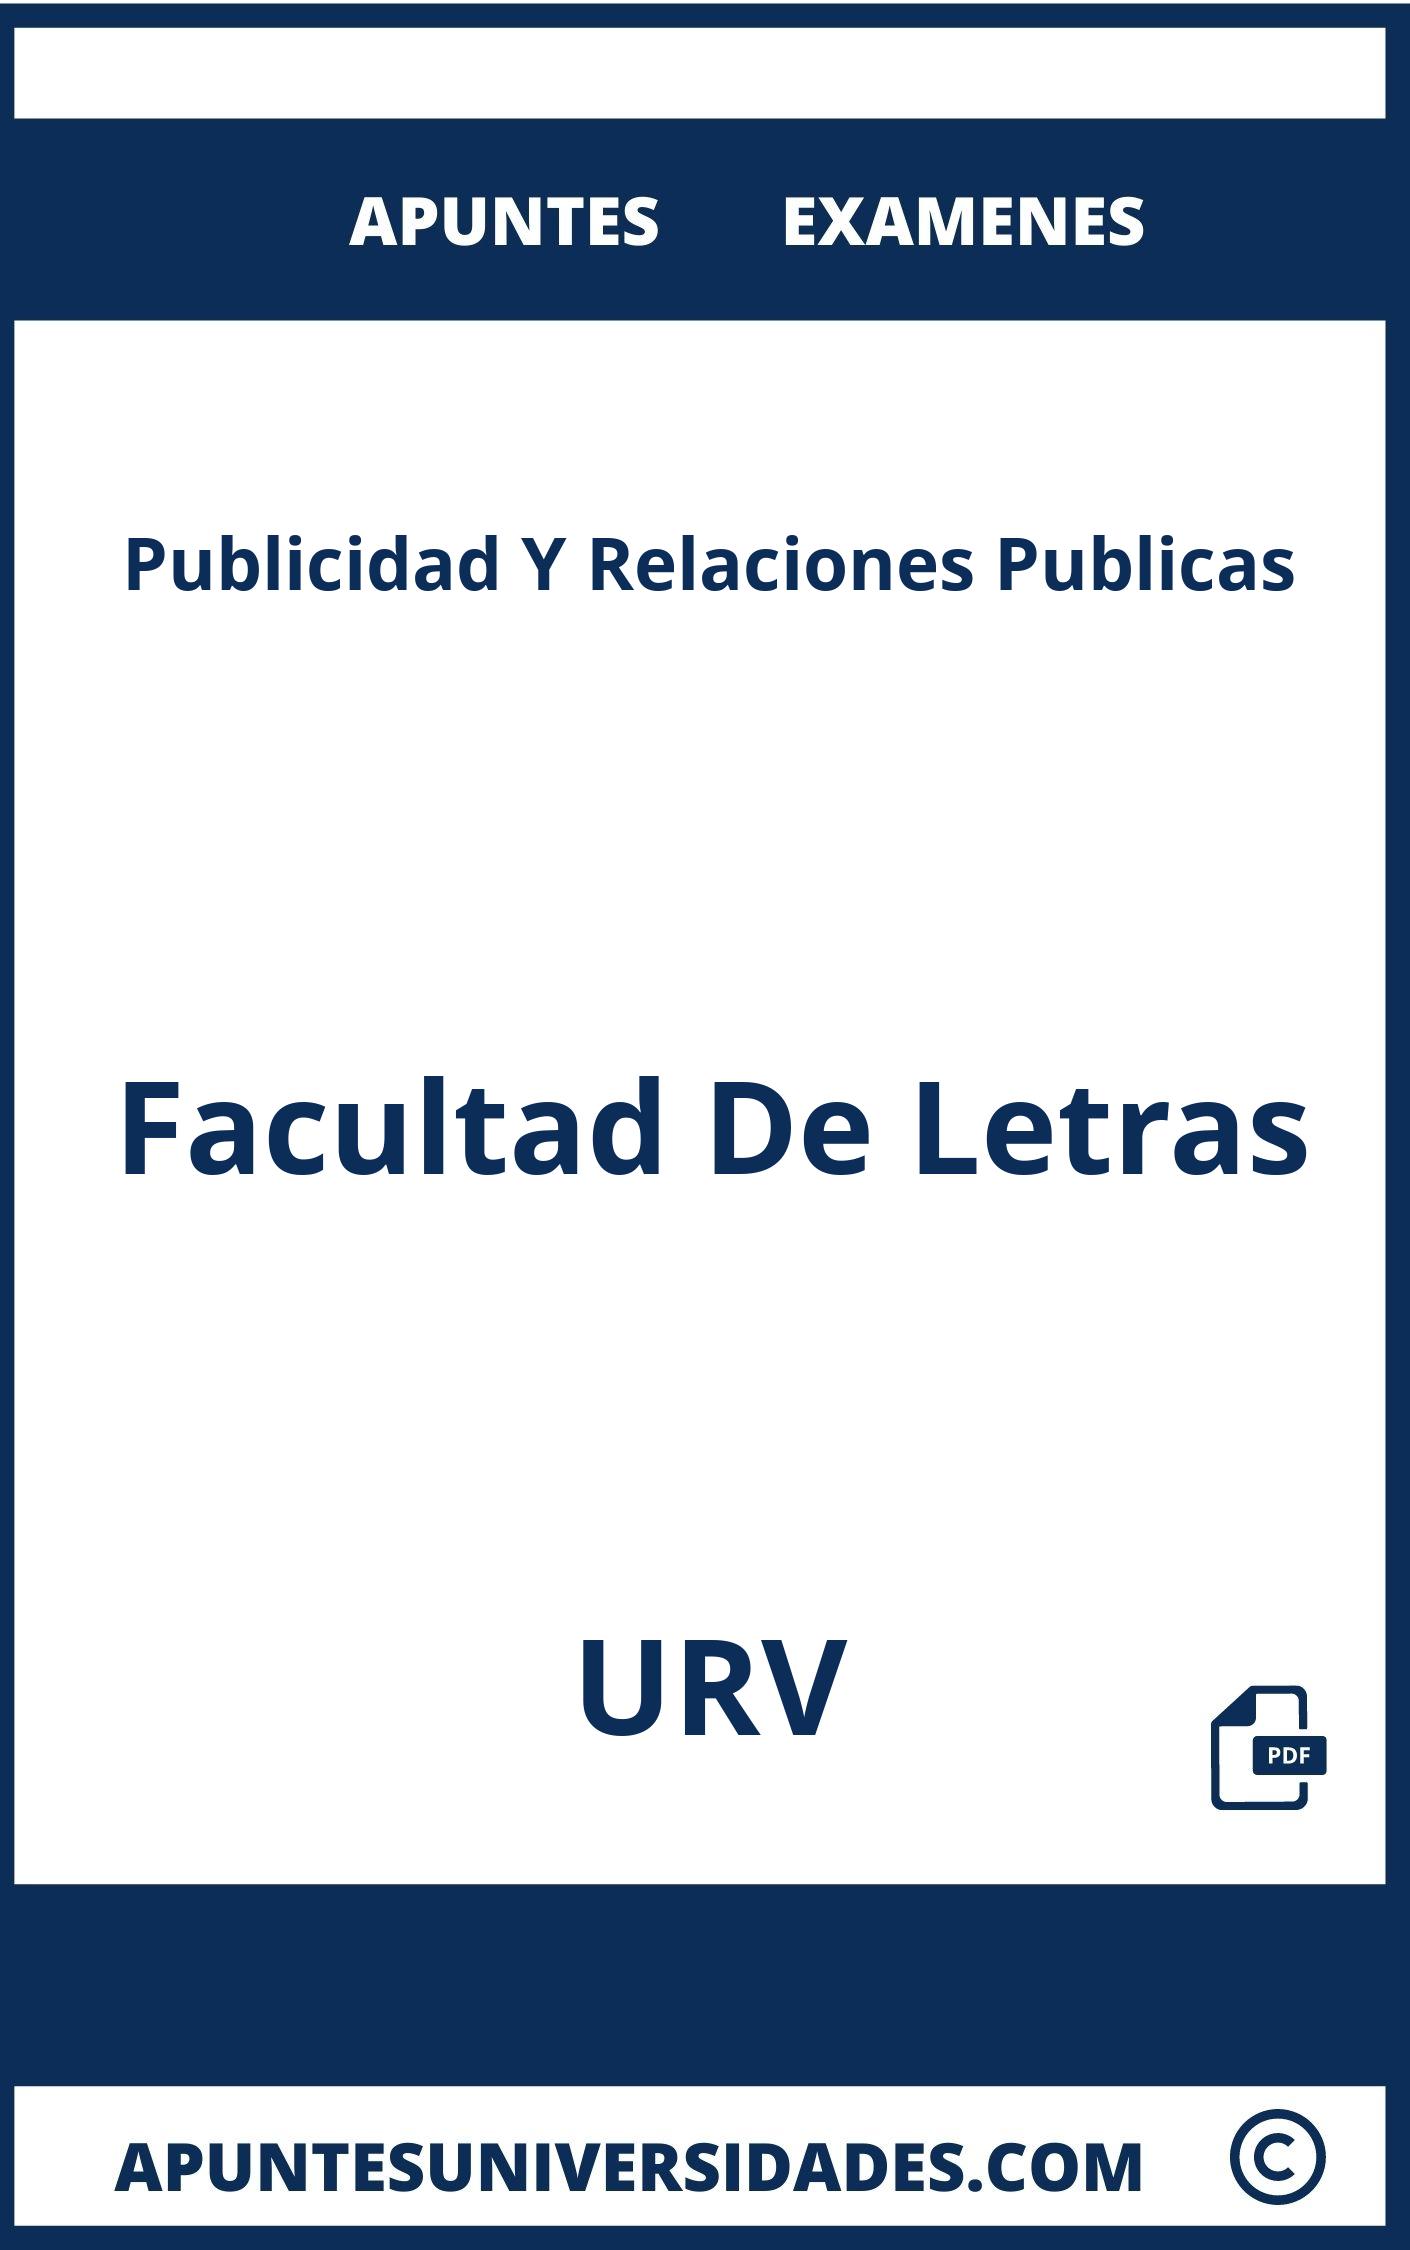 Examenes y Apuntes Publicidad Y Relaciones Publicas URV